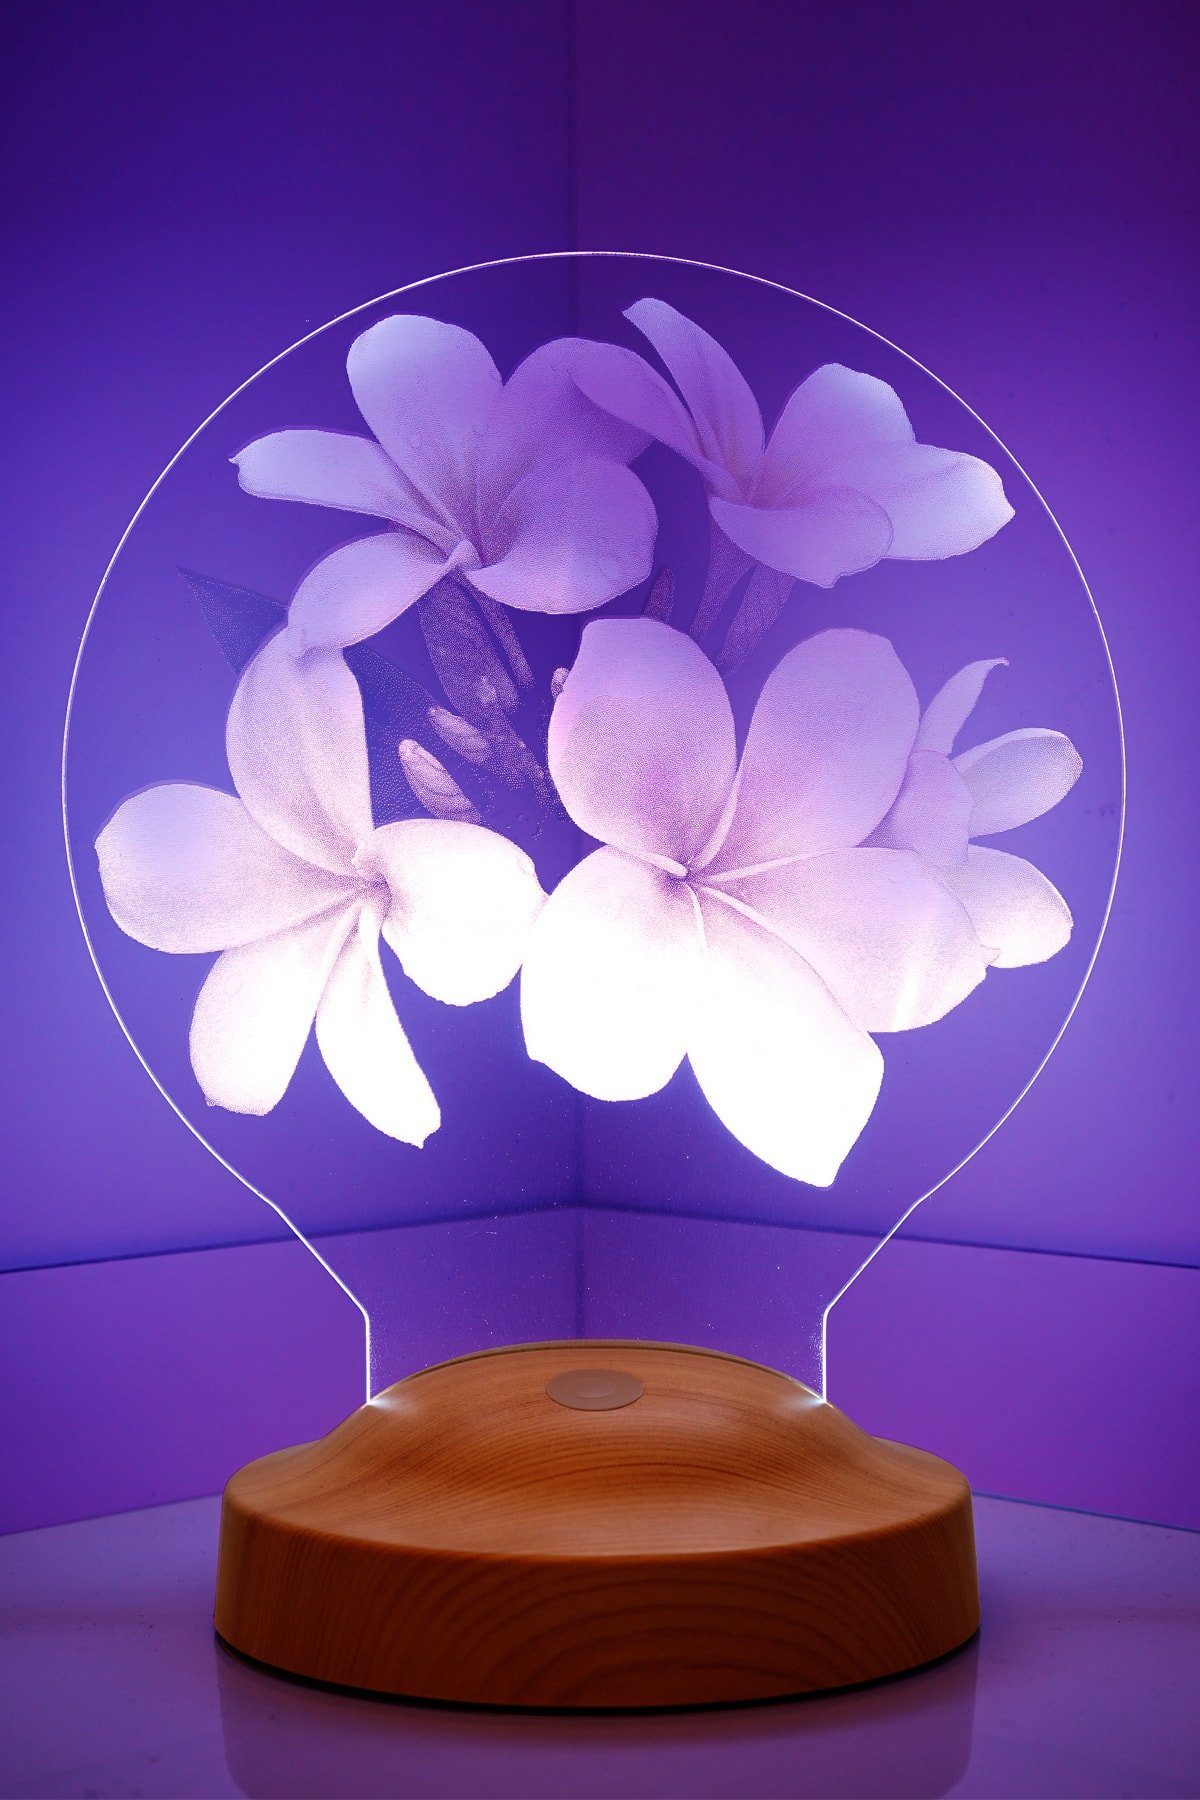 Geschenkelampe LED Nachttischlampe Plumeria Blumen 3D mehrfarbige Nachttischlampe Muttertag, Leuchte 7 Farben fest integriert, Muttertagsgeschenke für Mama, Ehefrau, Freundin, Oma, Kollegin